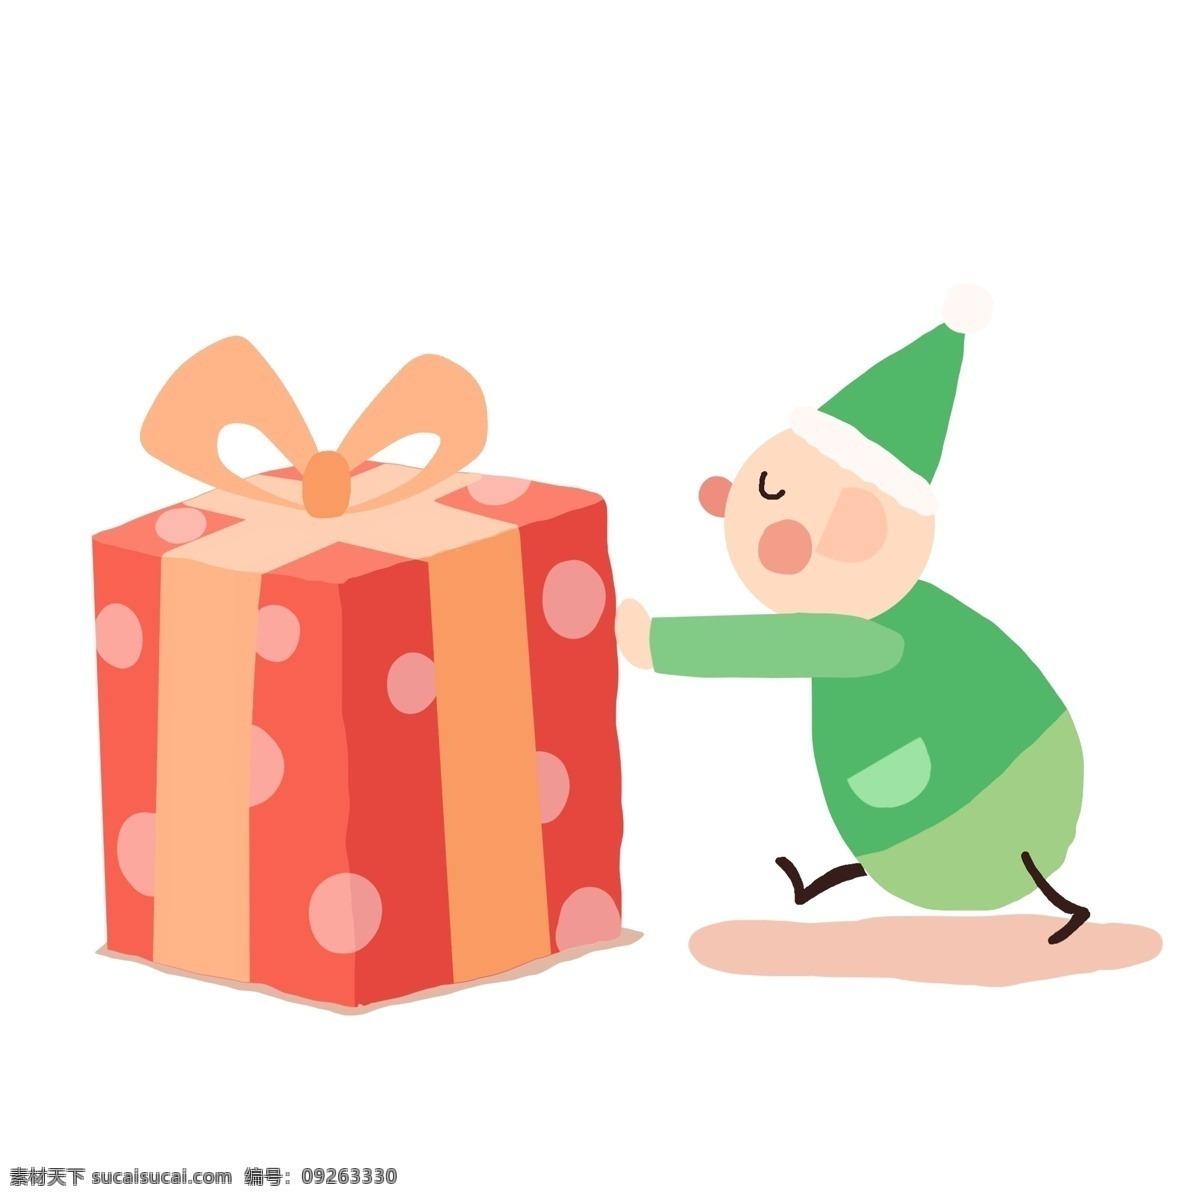 圣诞 节推 礼物 盒 小人物 简约 圣诞节 人物 插画 卡通 圣诞小人